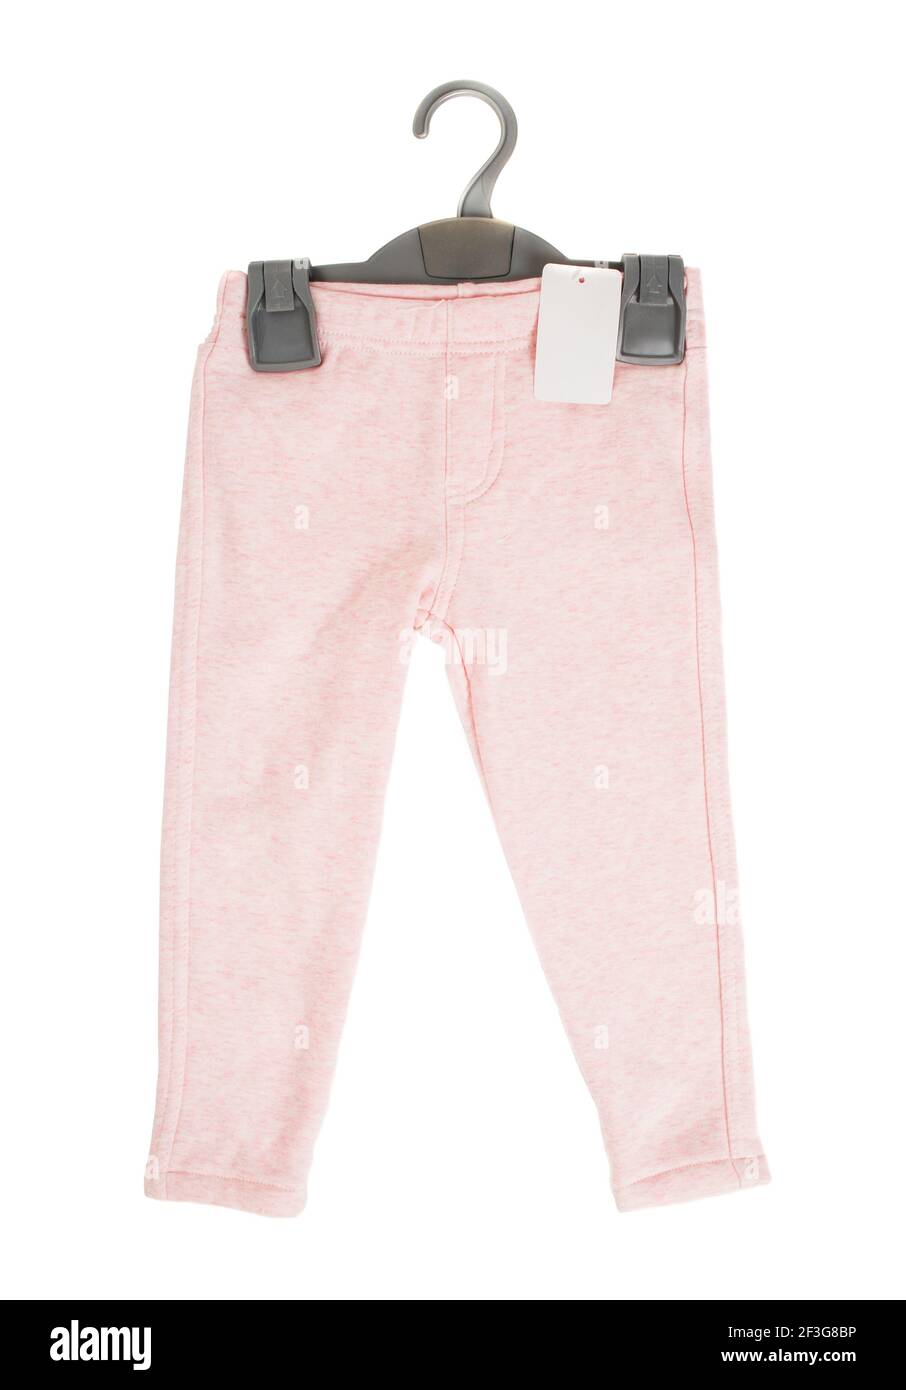 Pantaloni sportivi in cotone rosa per bambini con appendiabiti in plastica nera. Isolato su sfondo bianco. Foto Stock